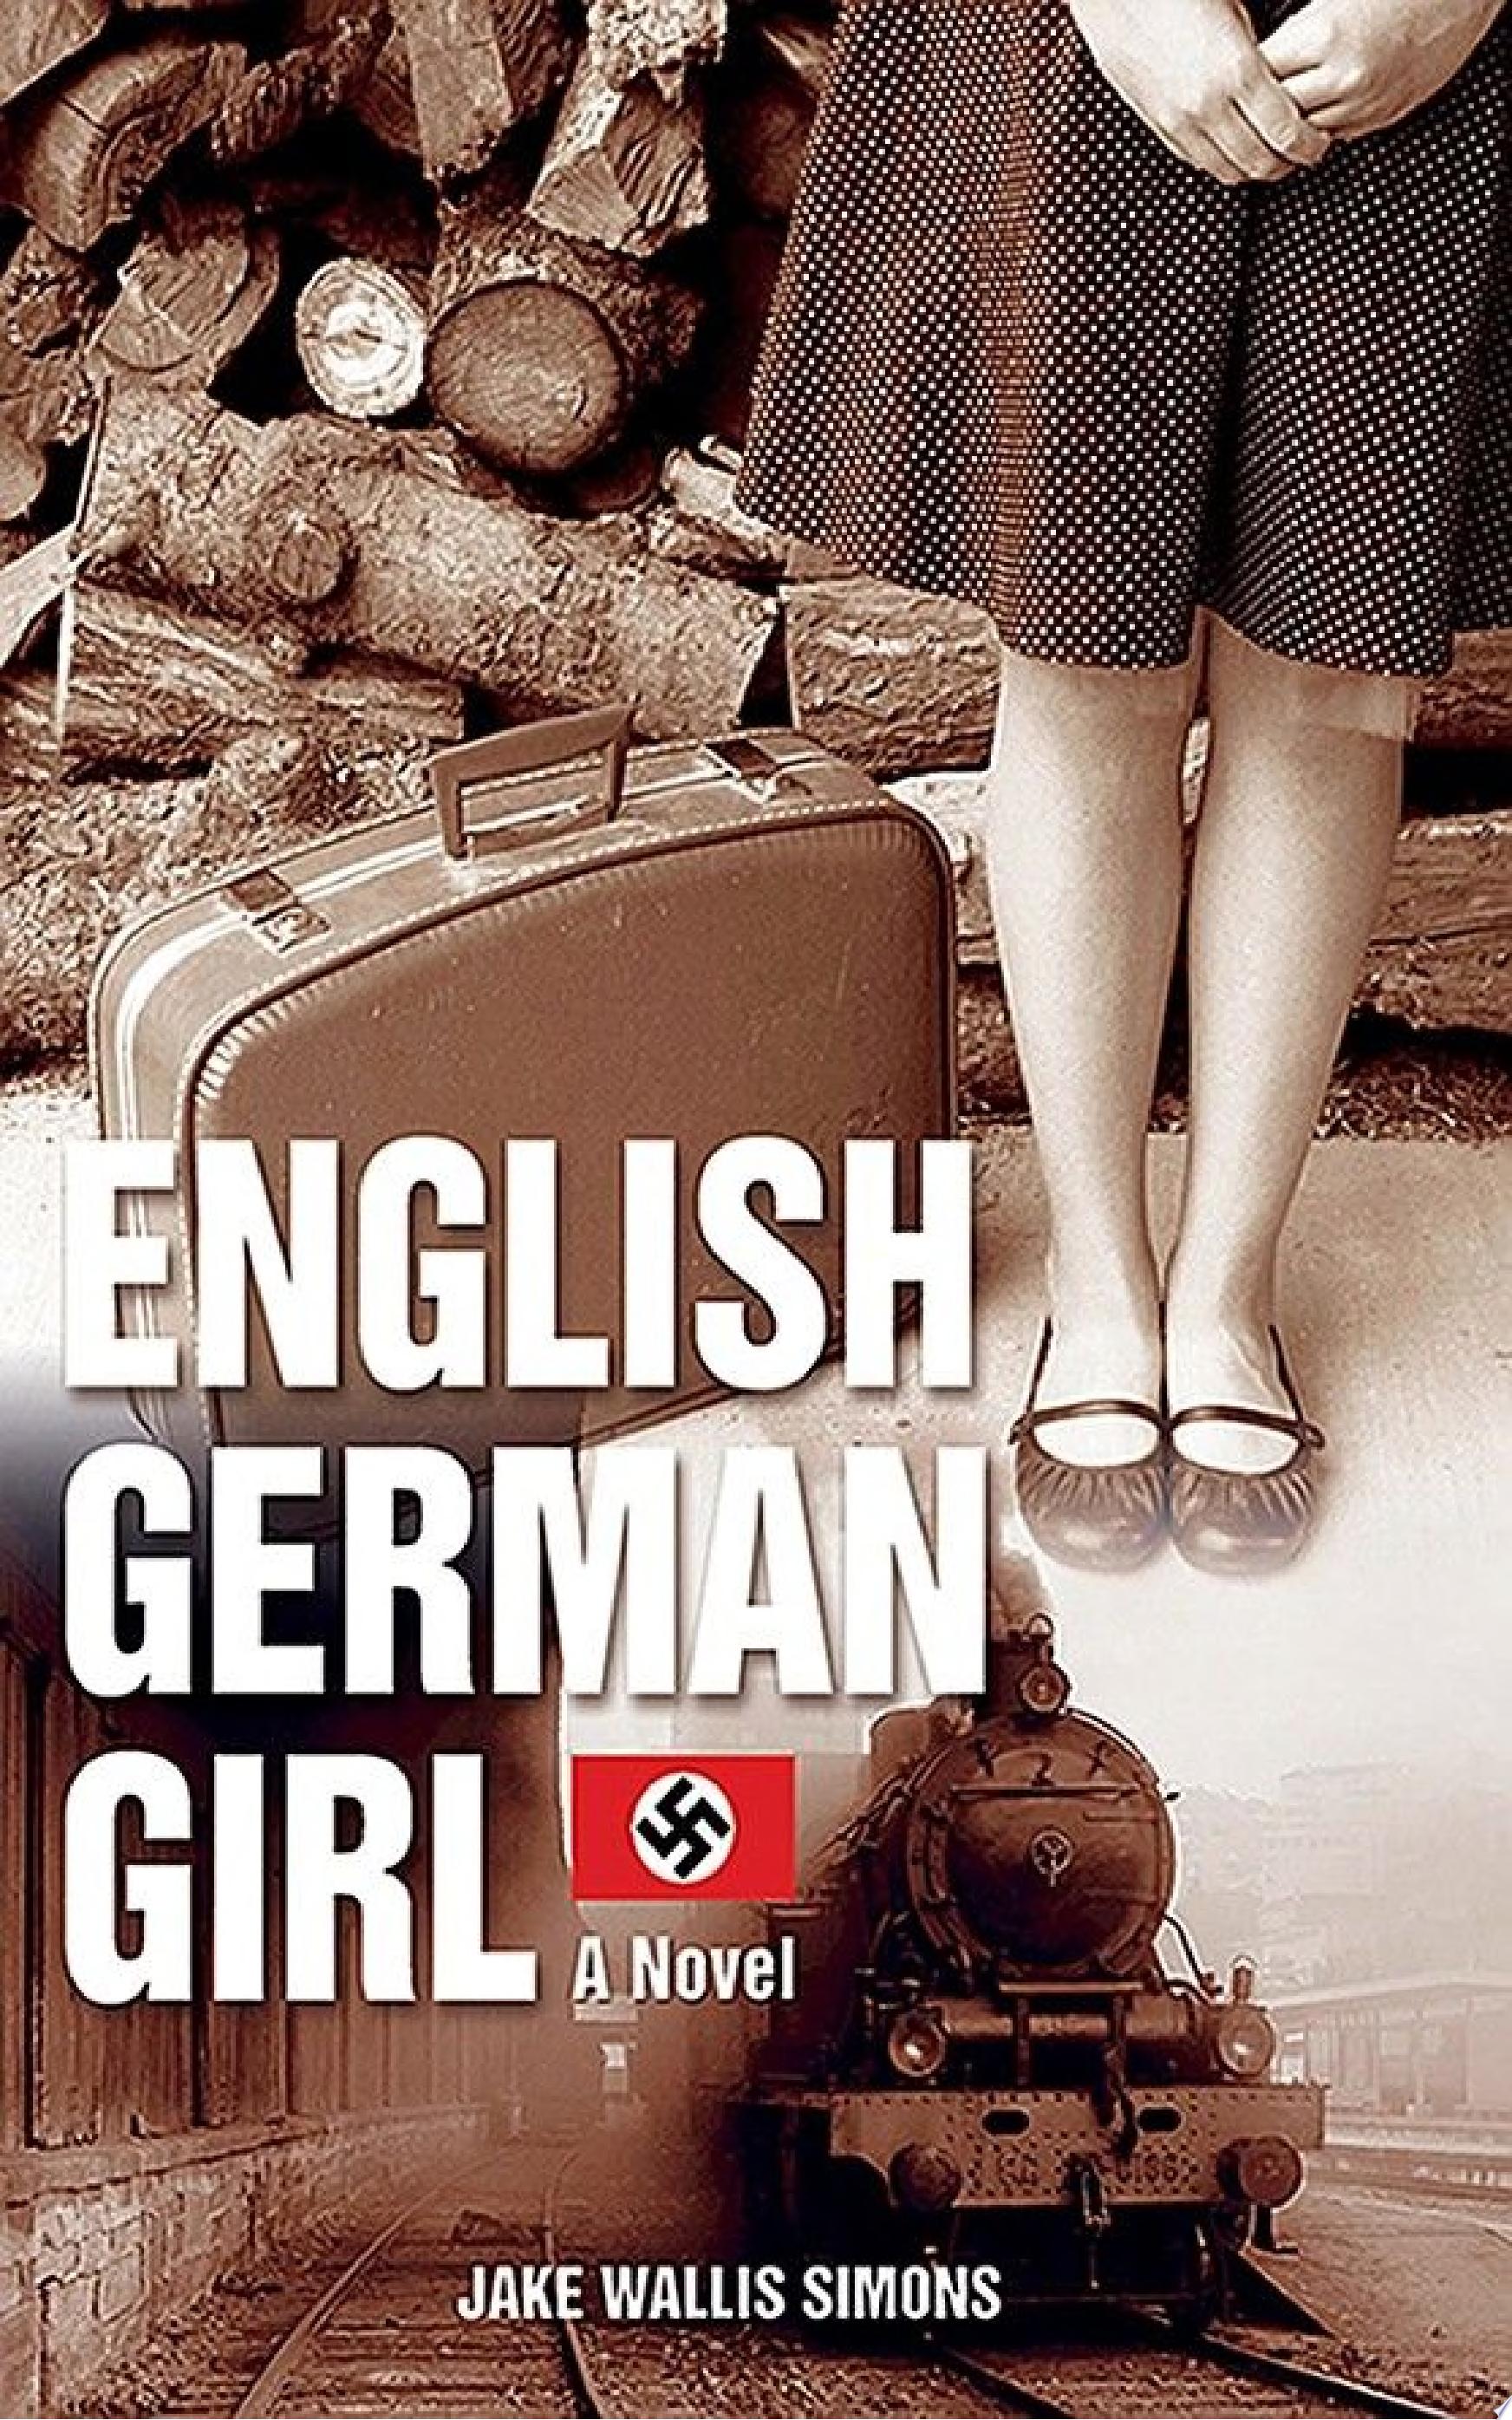 Image for "The English German Girl"